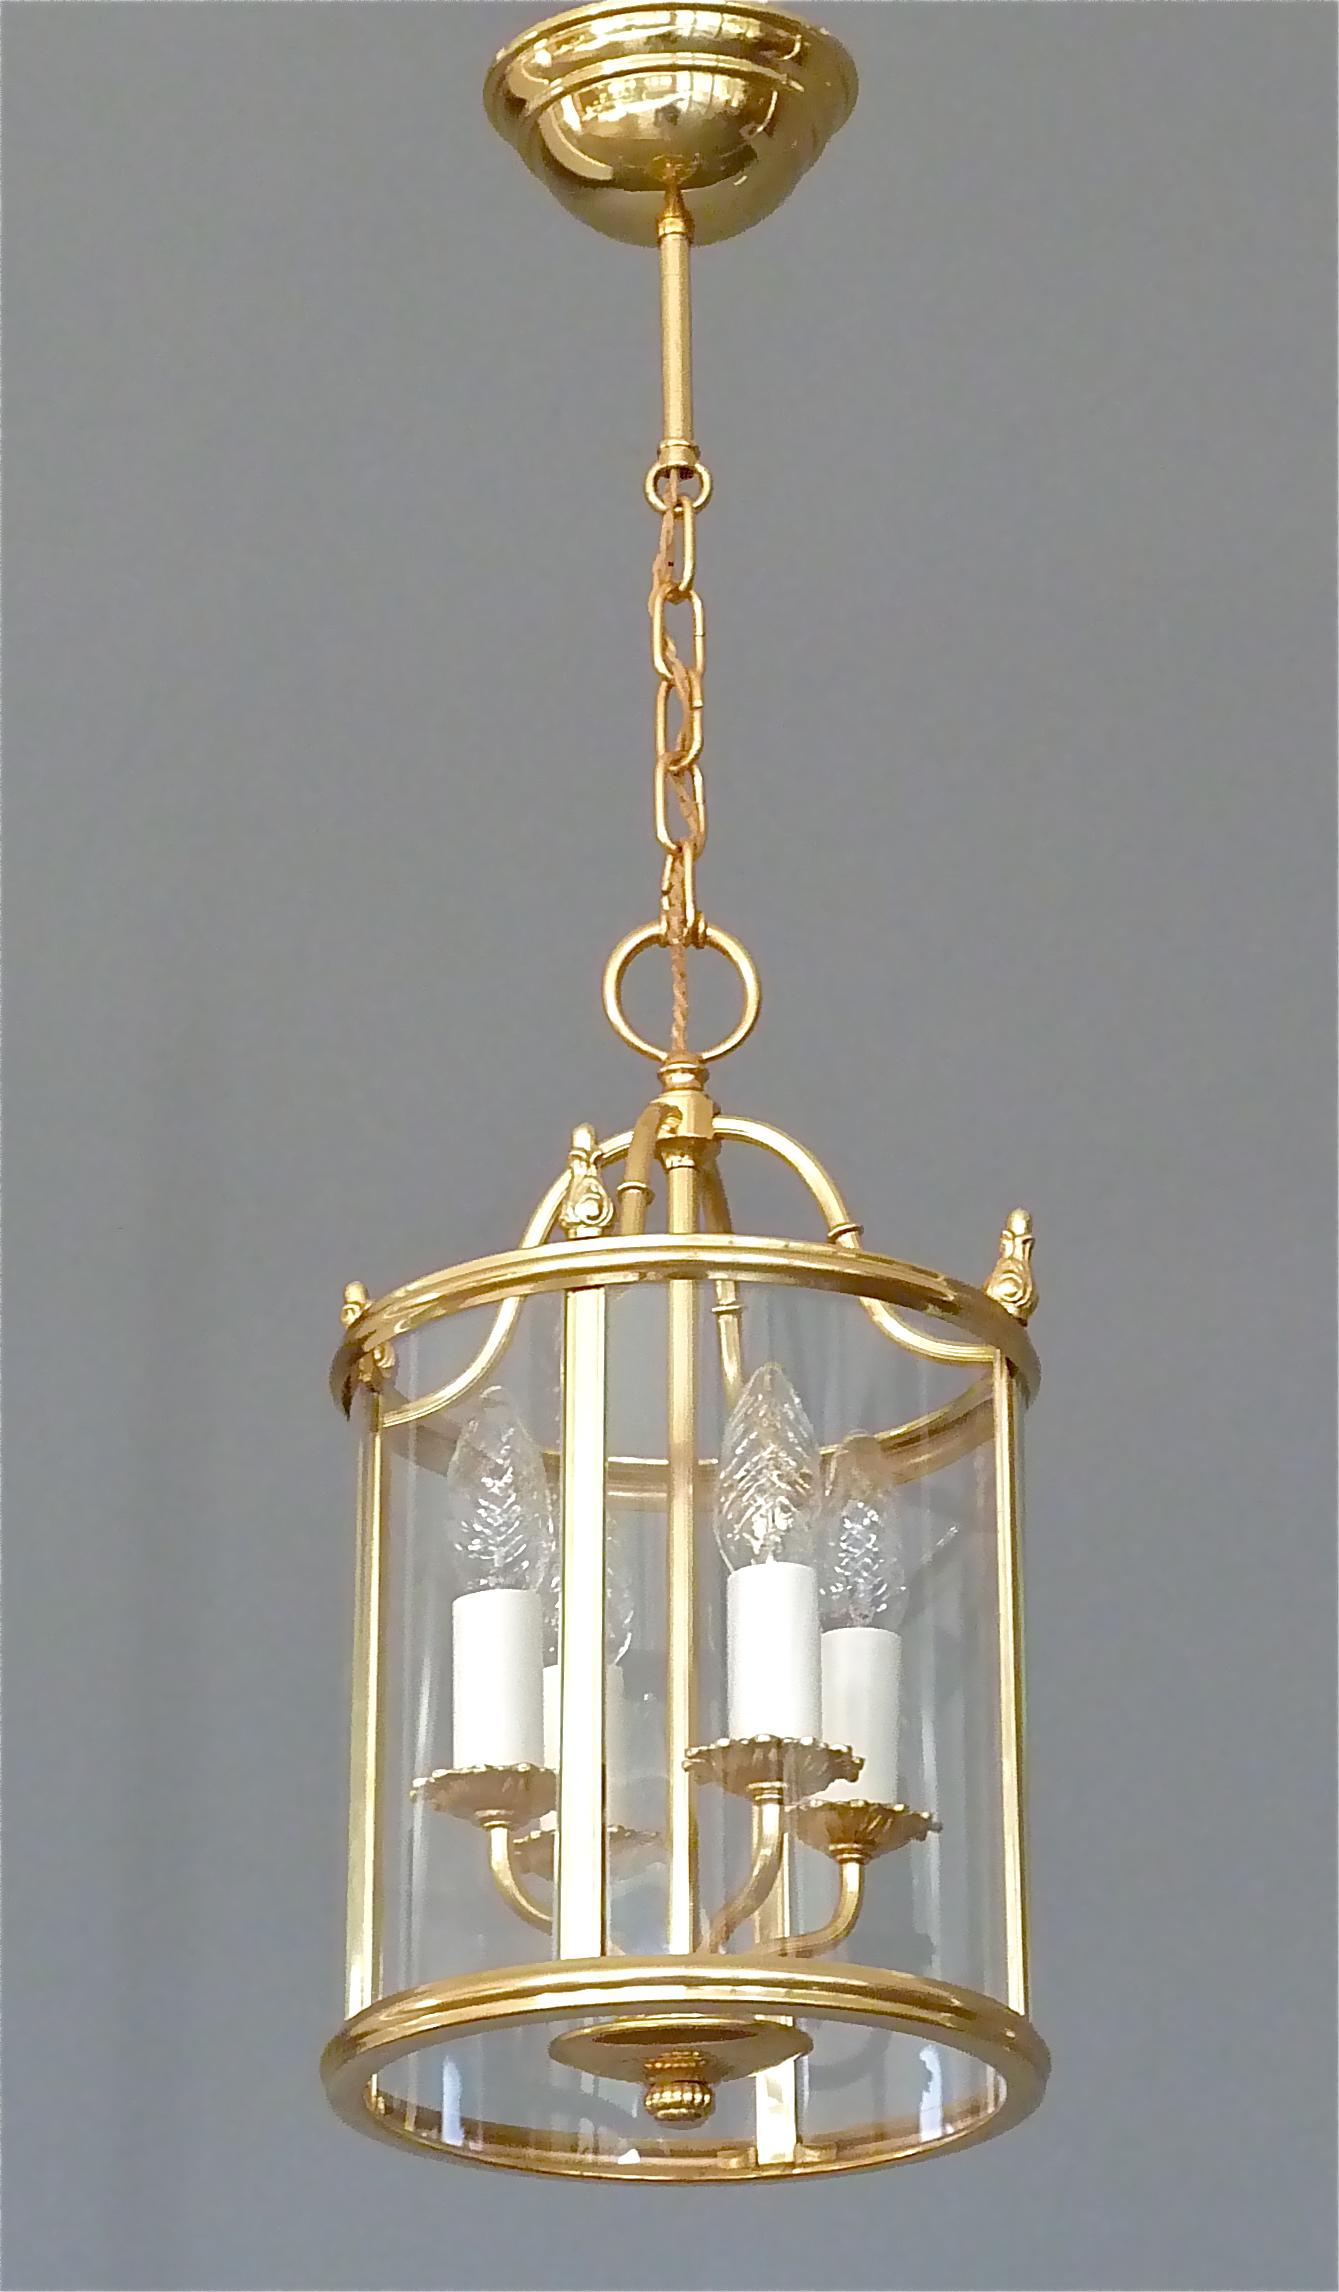 Empire Revival Signed Gilt Brass and Glass Lantern by Gaetano Sciolari Italian Empire Style